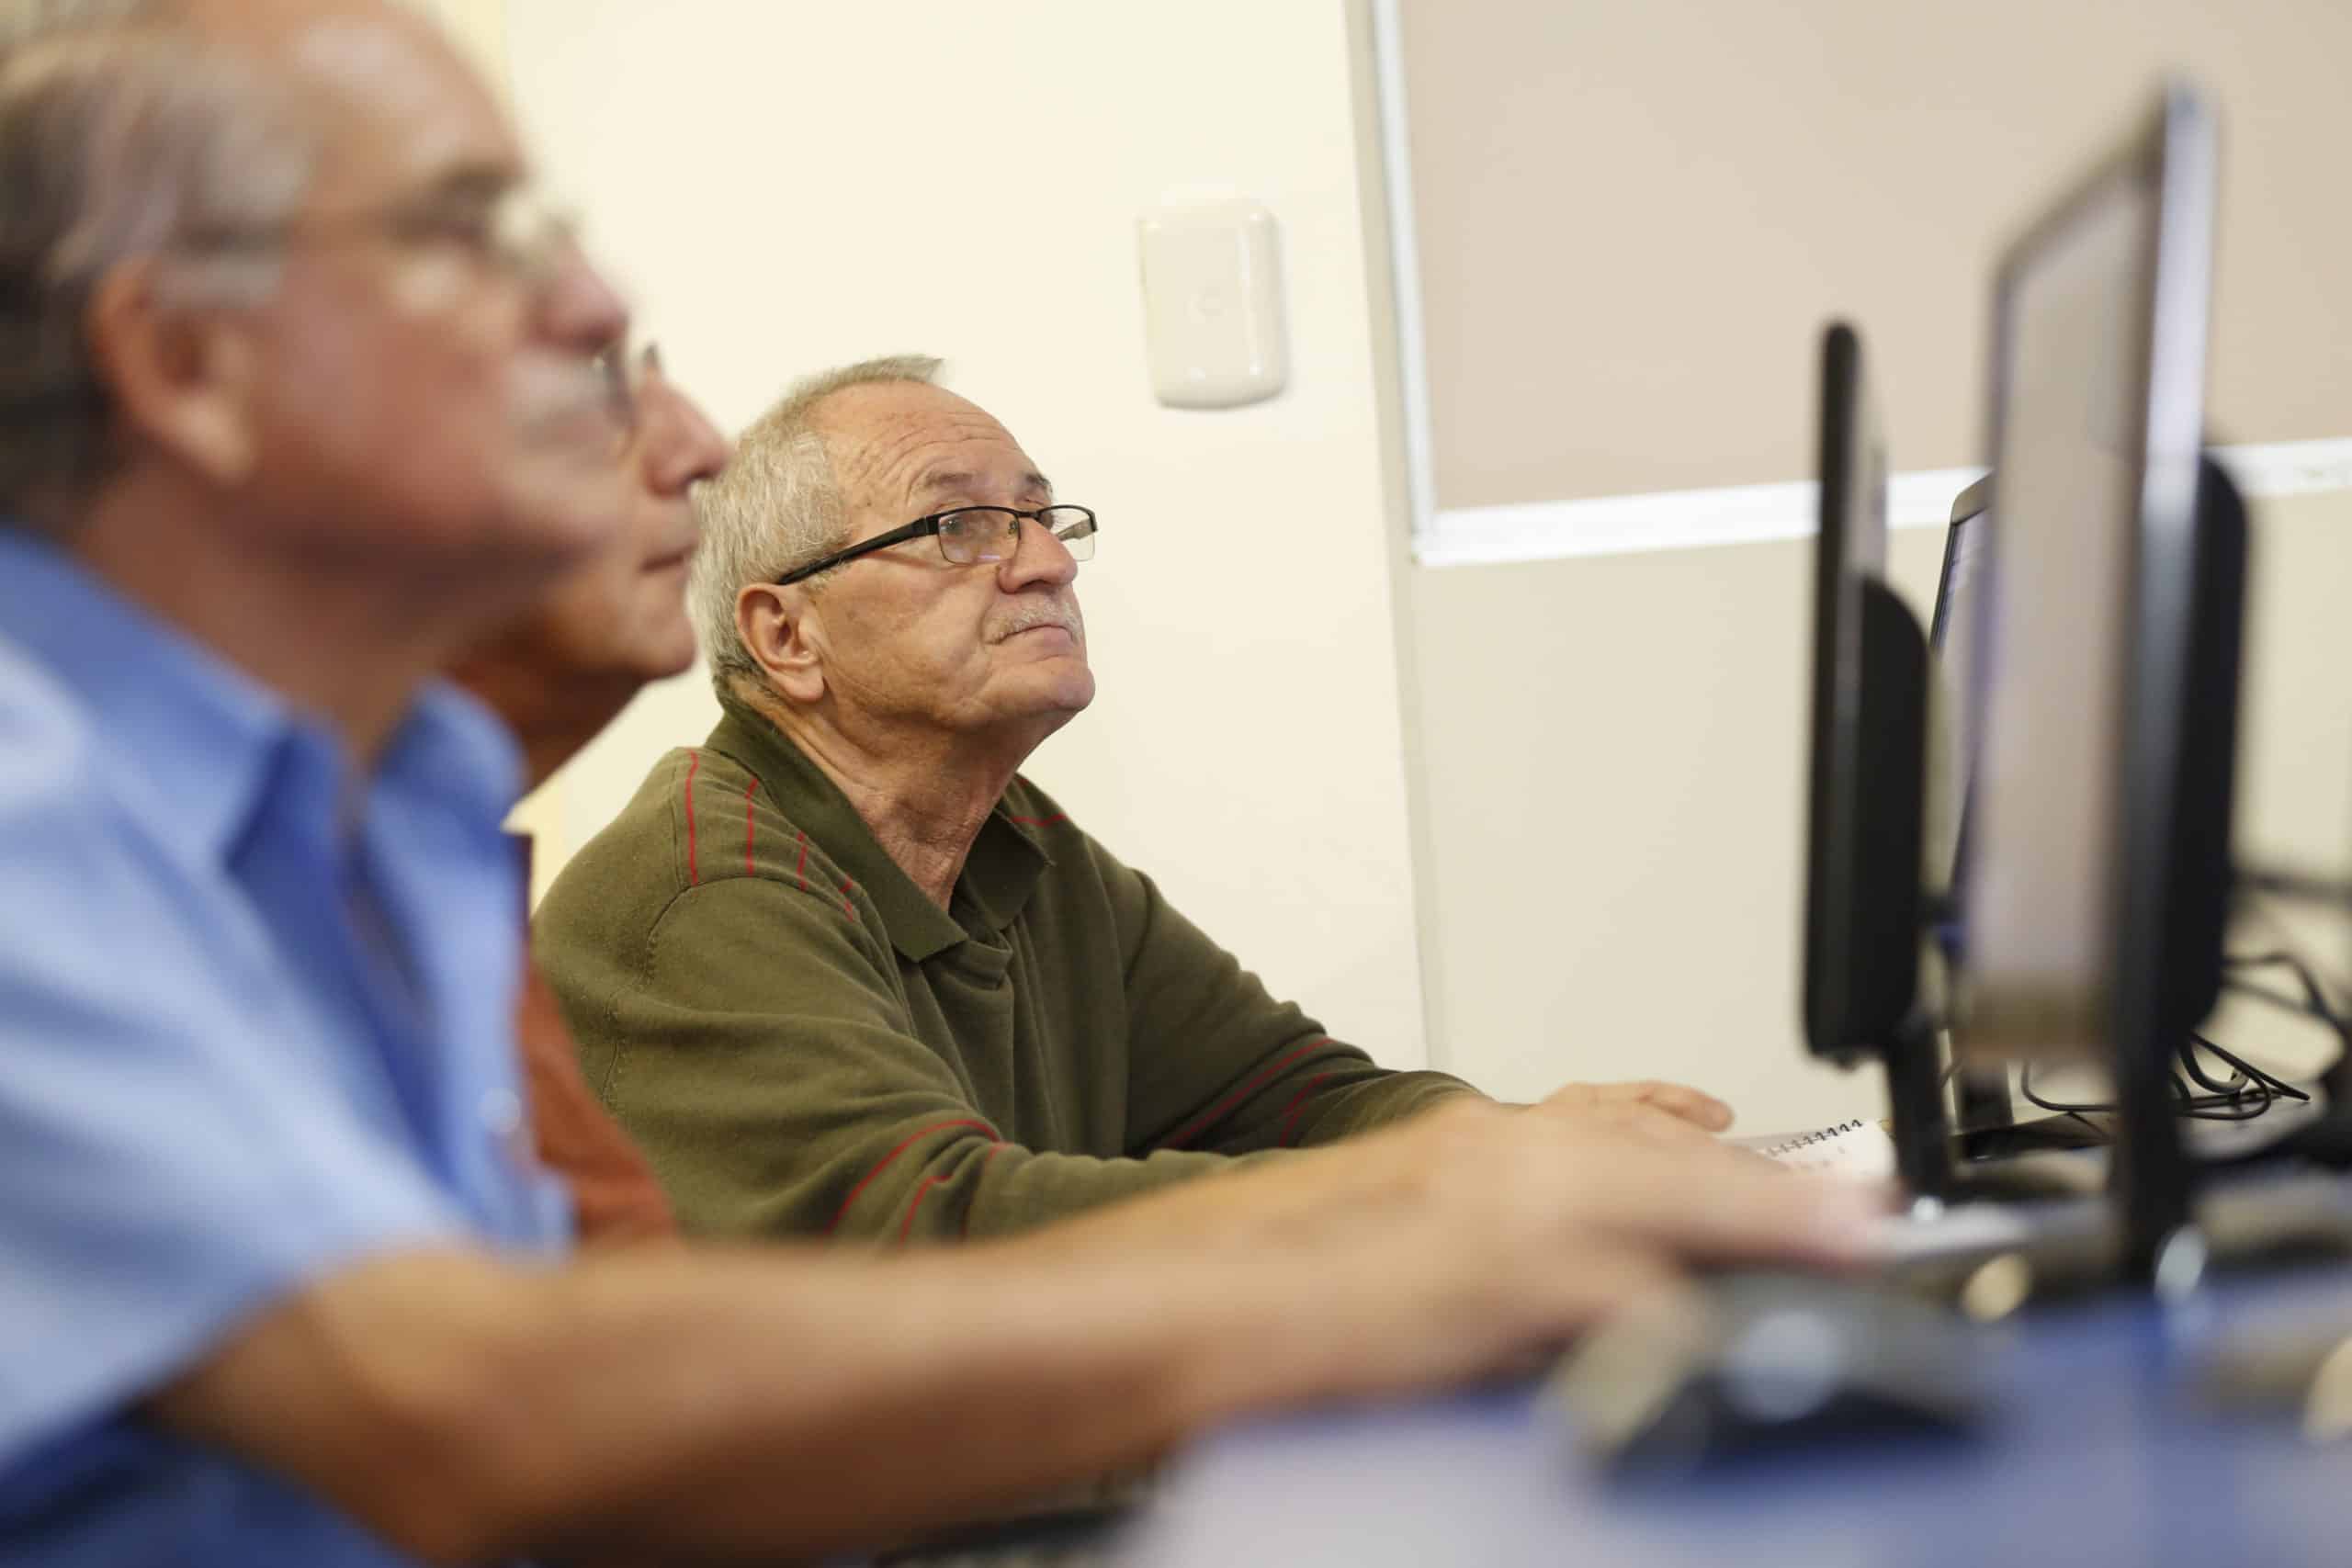 Estudio señala que 86% de los adultos mayores usa internet y dispositivos electrónicos